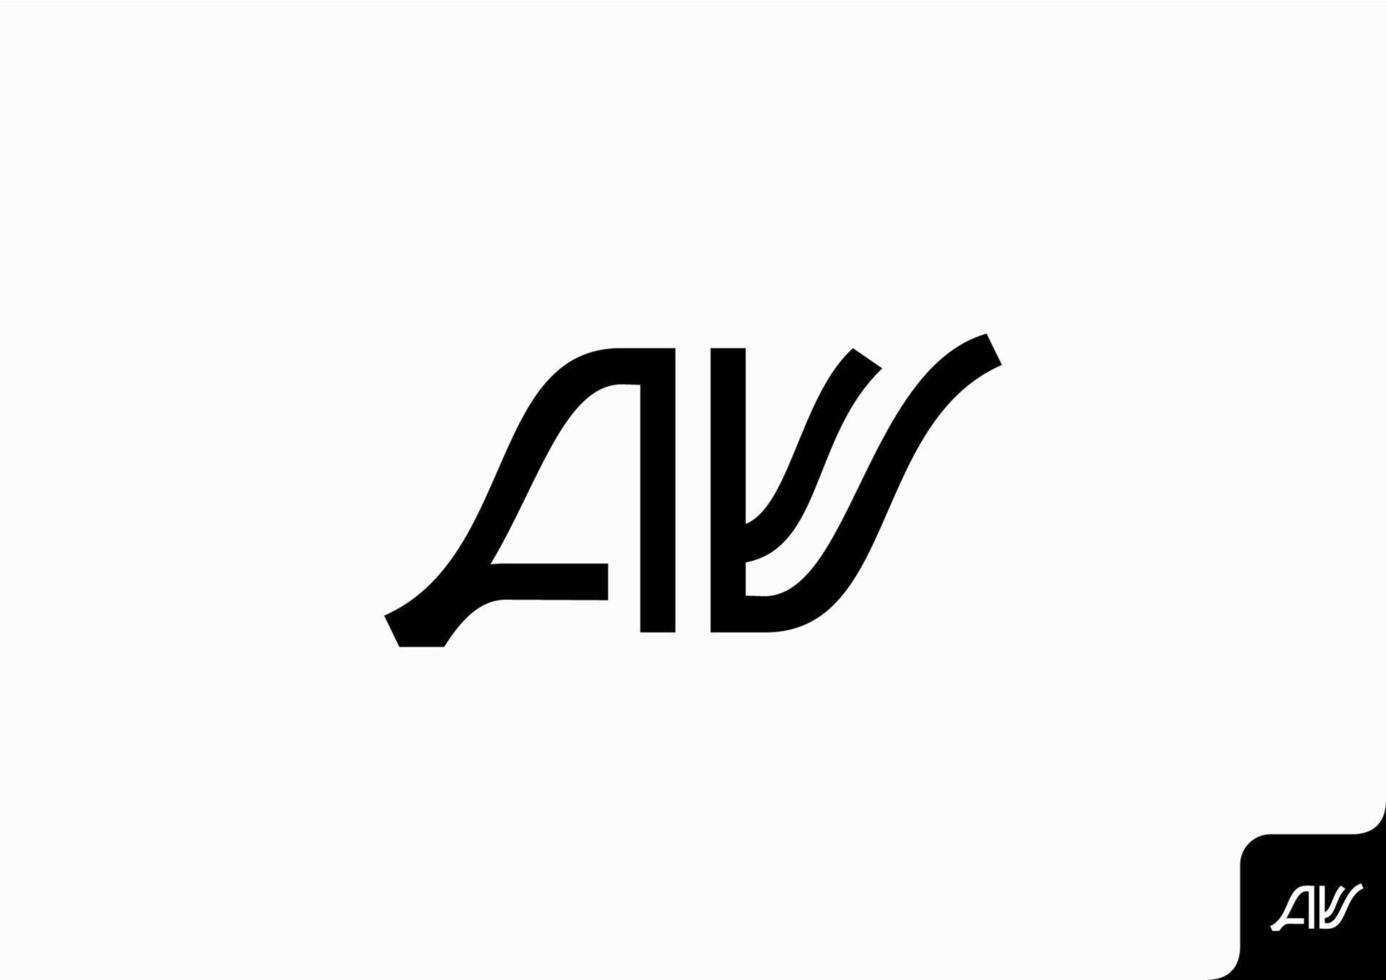 buchstabe av va symbol logo flach minimalistisch bunt schwarz und weiß vektor